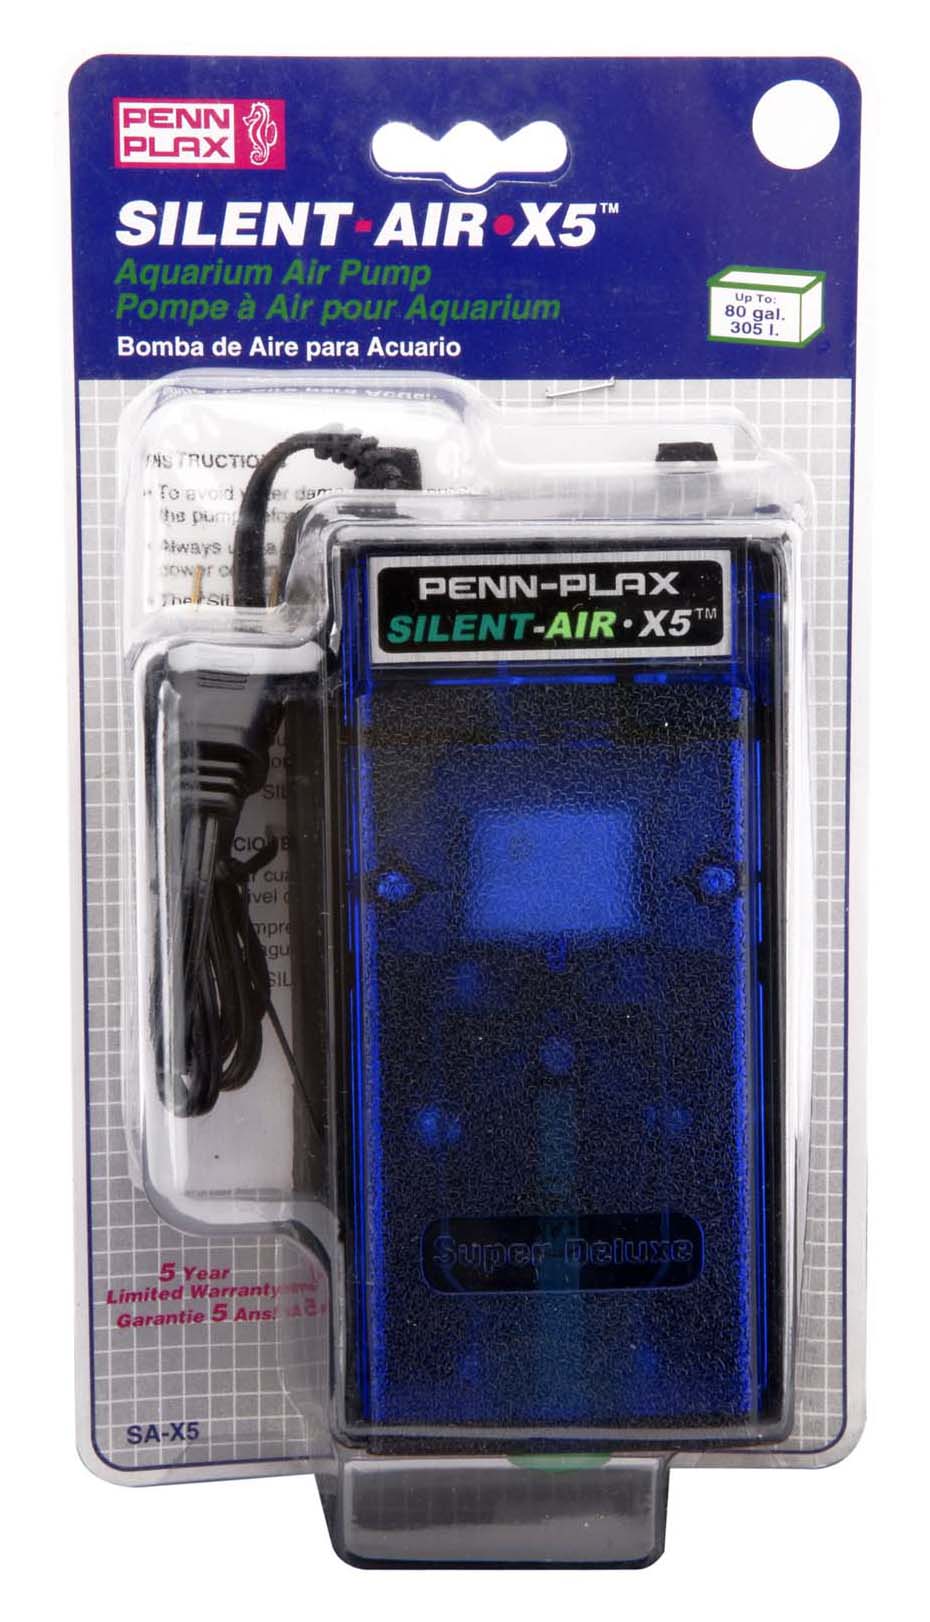 Penn Plax Air Pumps